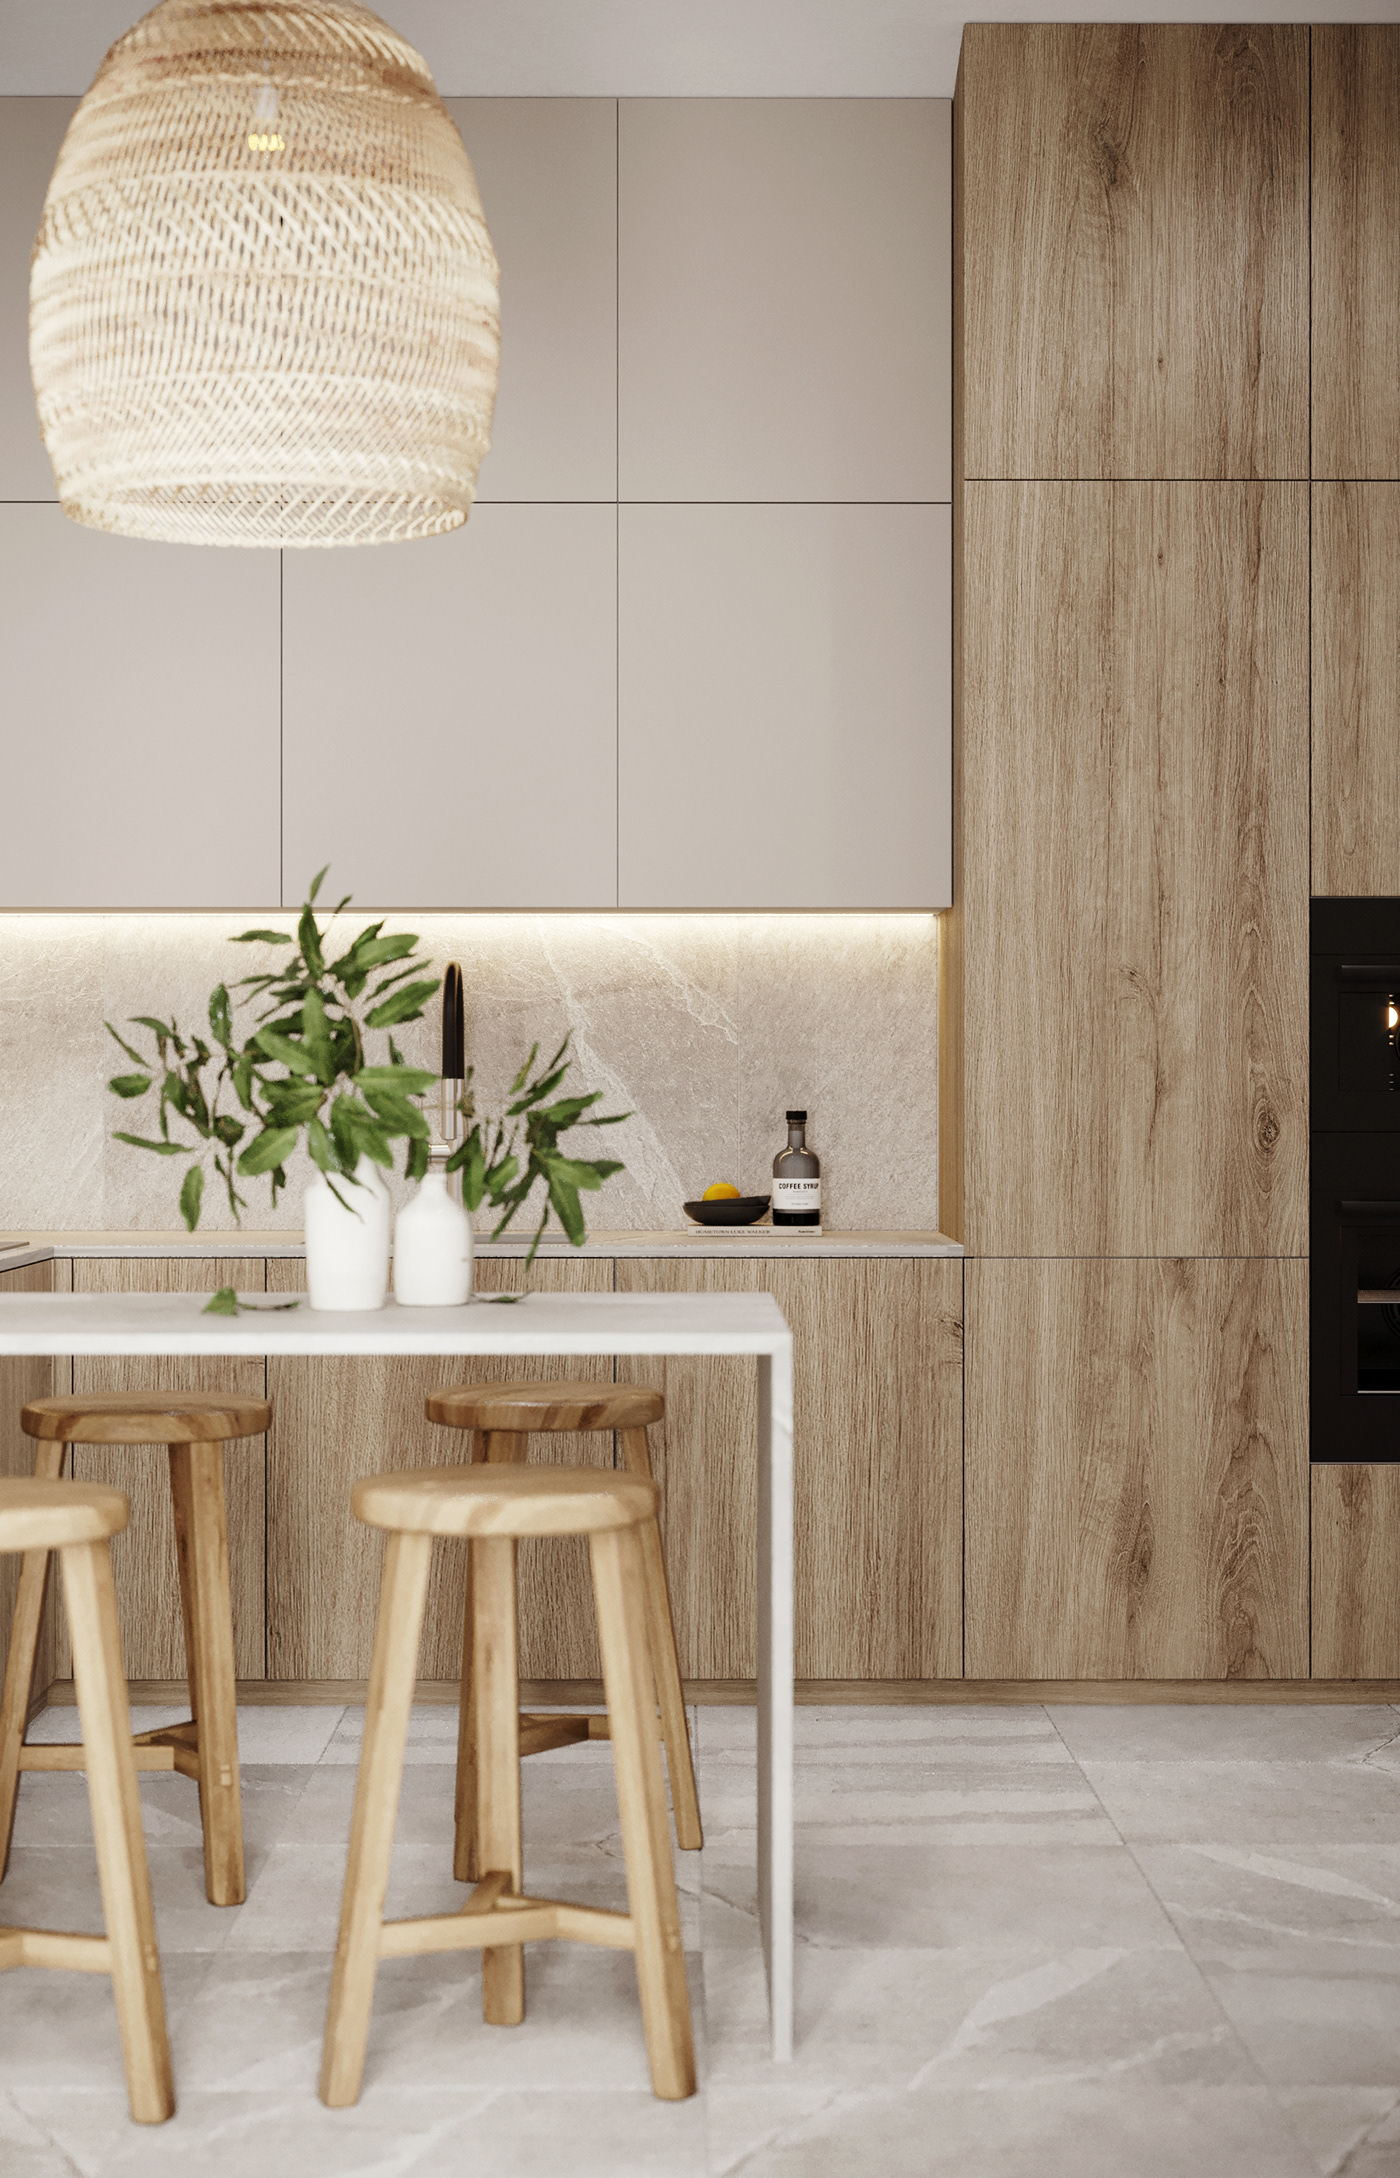 interior design  visualization 3ds max corona render  modern interior cozy home